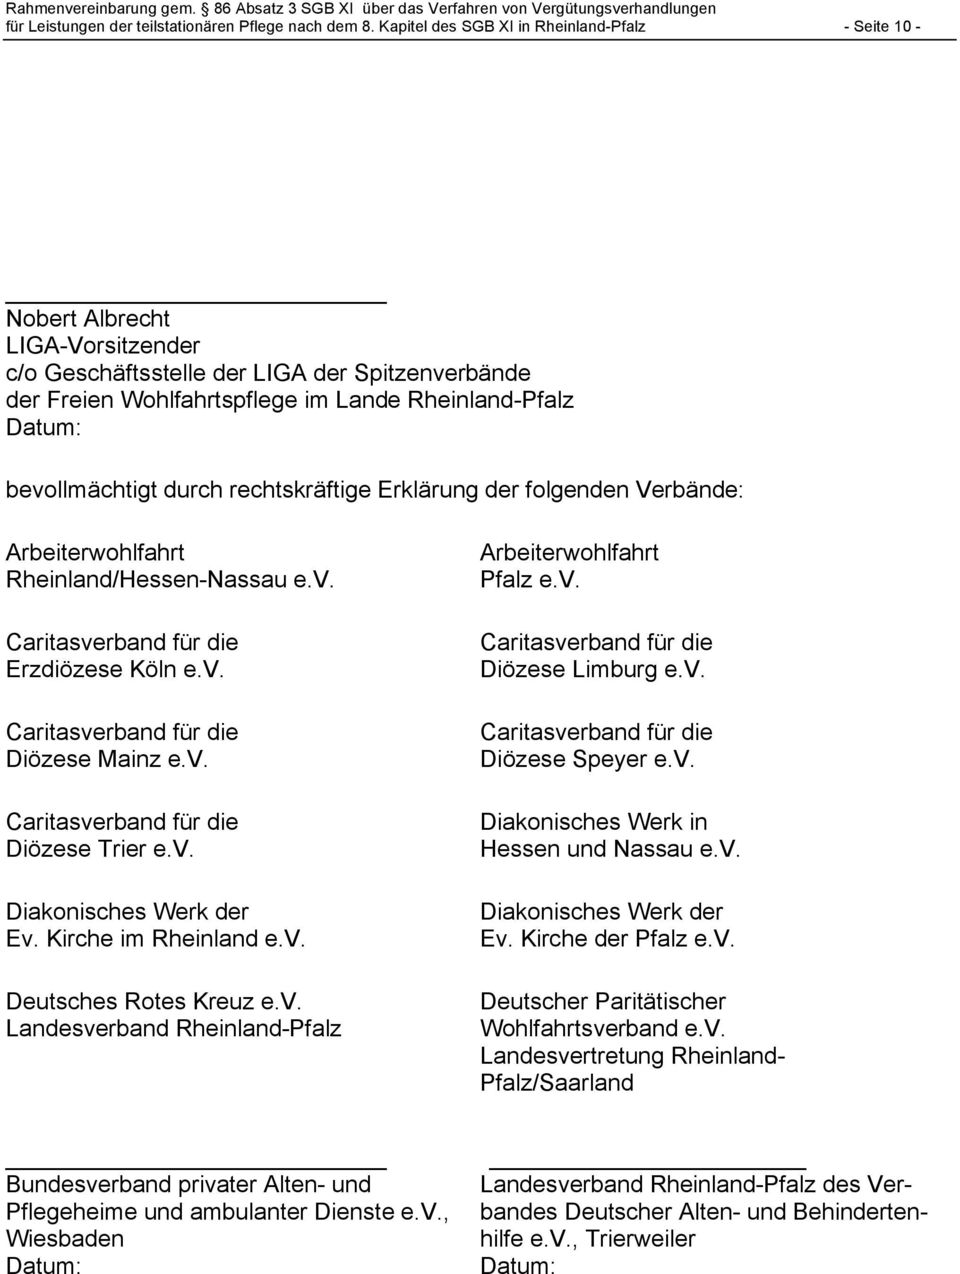 bevollmächtigt durch rechtskräftige Erklärung der folgenden Verbände: Arbeiterwohlfahrt Rheinland/Hessen-Nassau e.v. Caritasverband für die Erzdiözese Köln e.v. Caritasverband für die Diözese Mainz e.